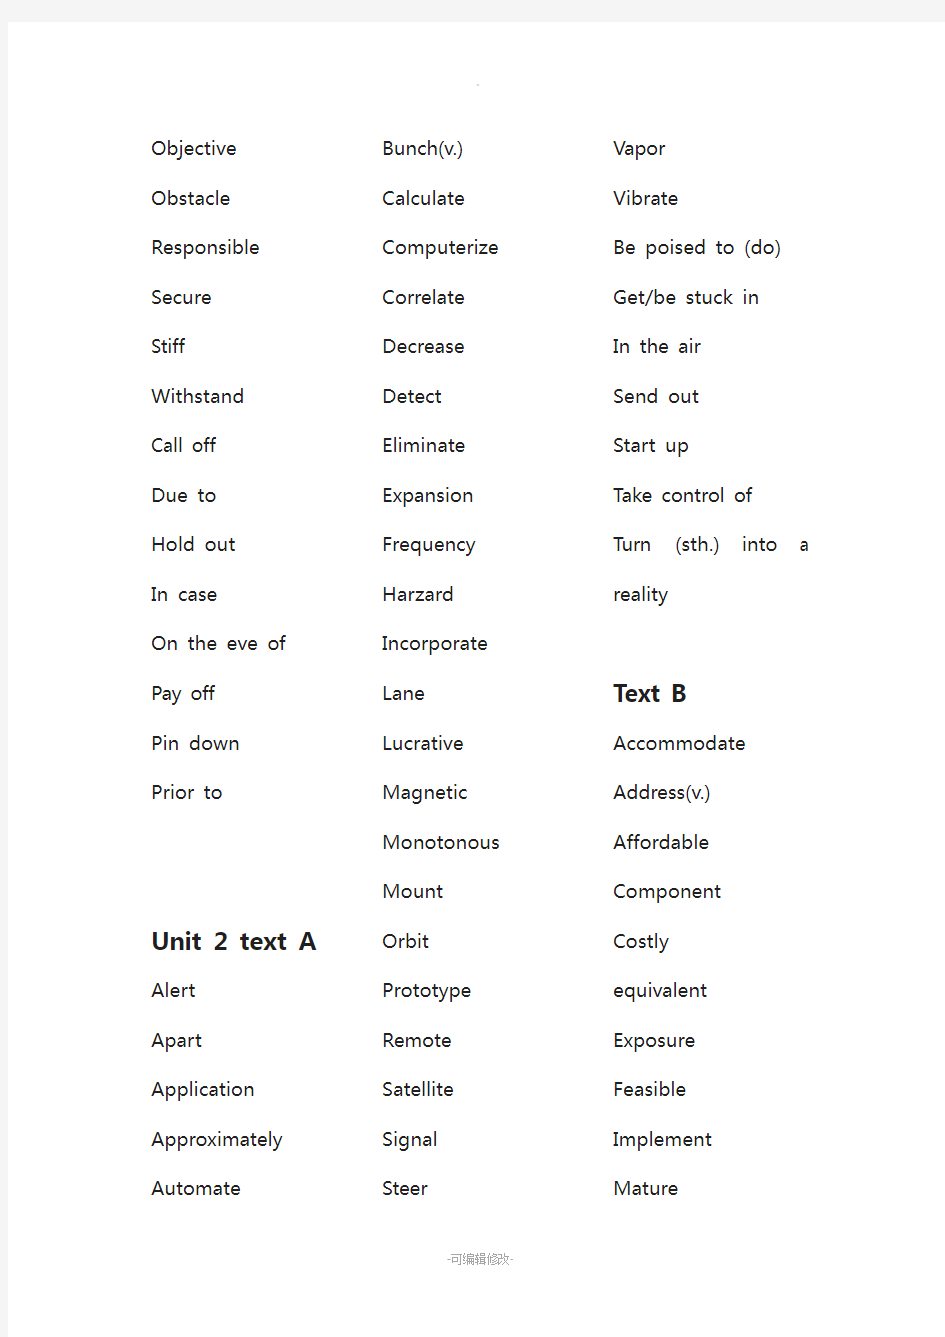 全新版大学英语综合教程4重点单词表